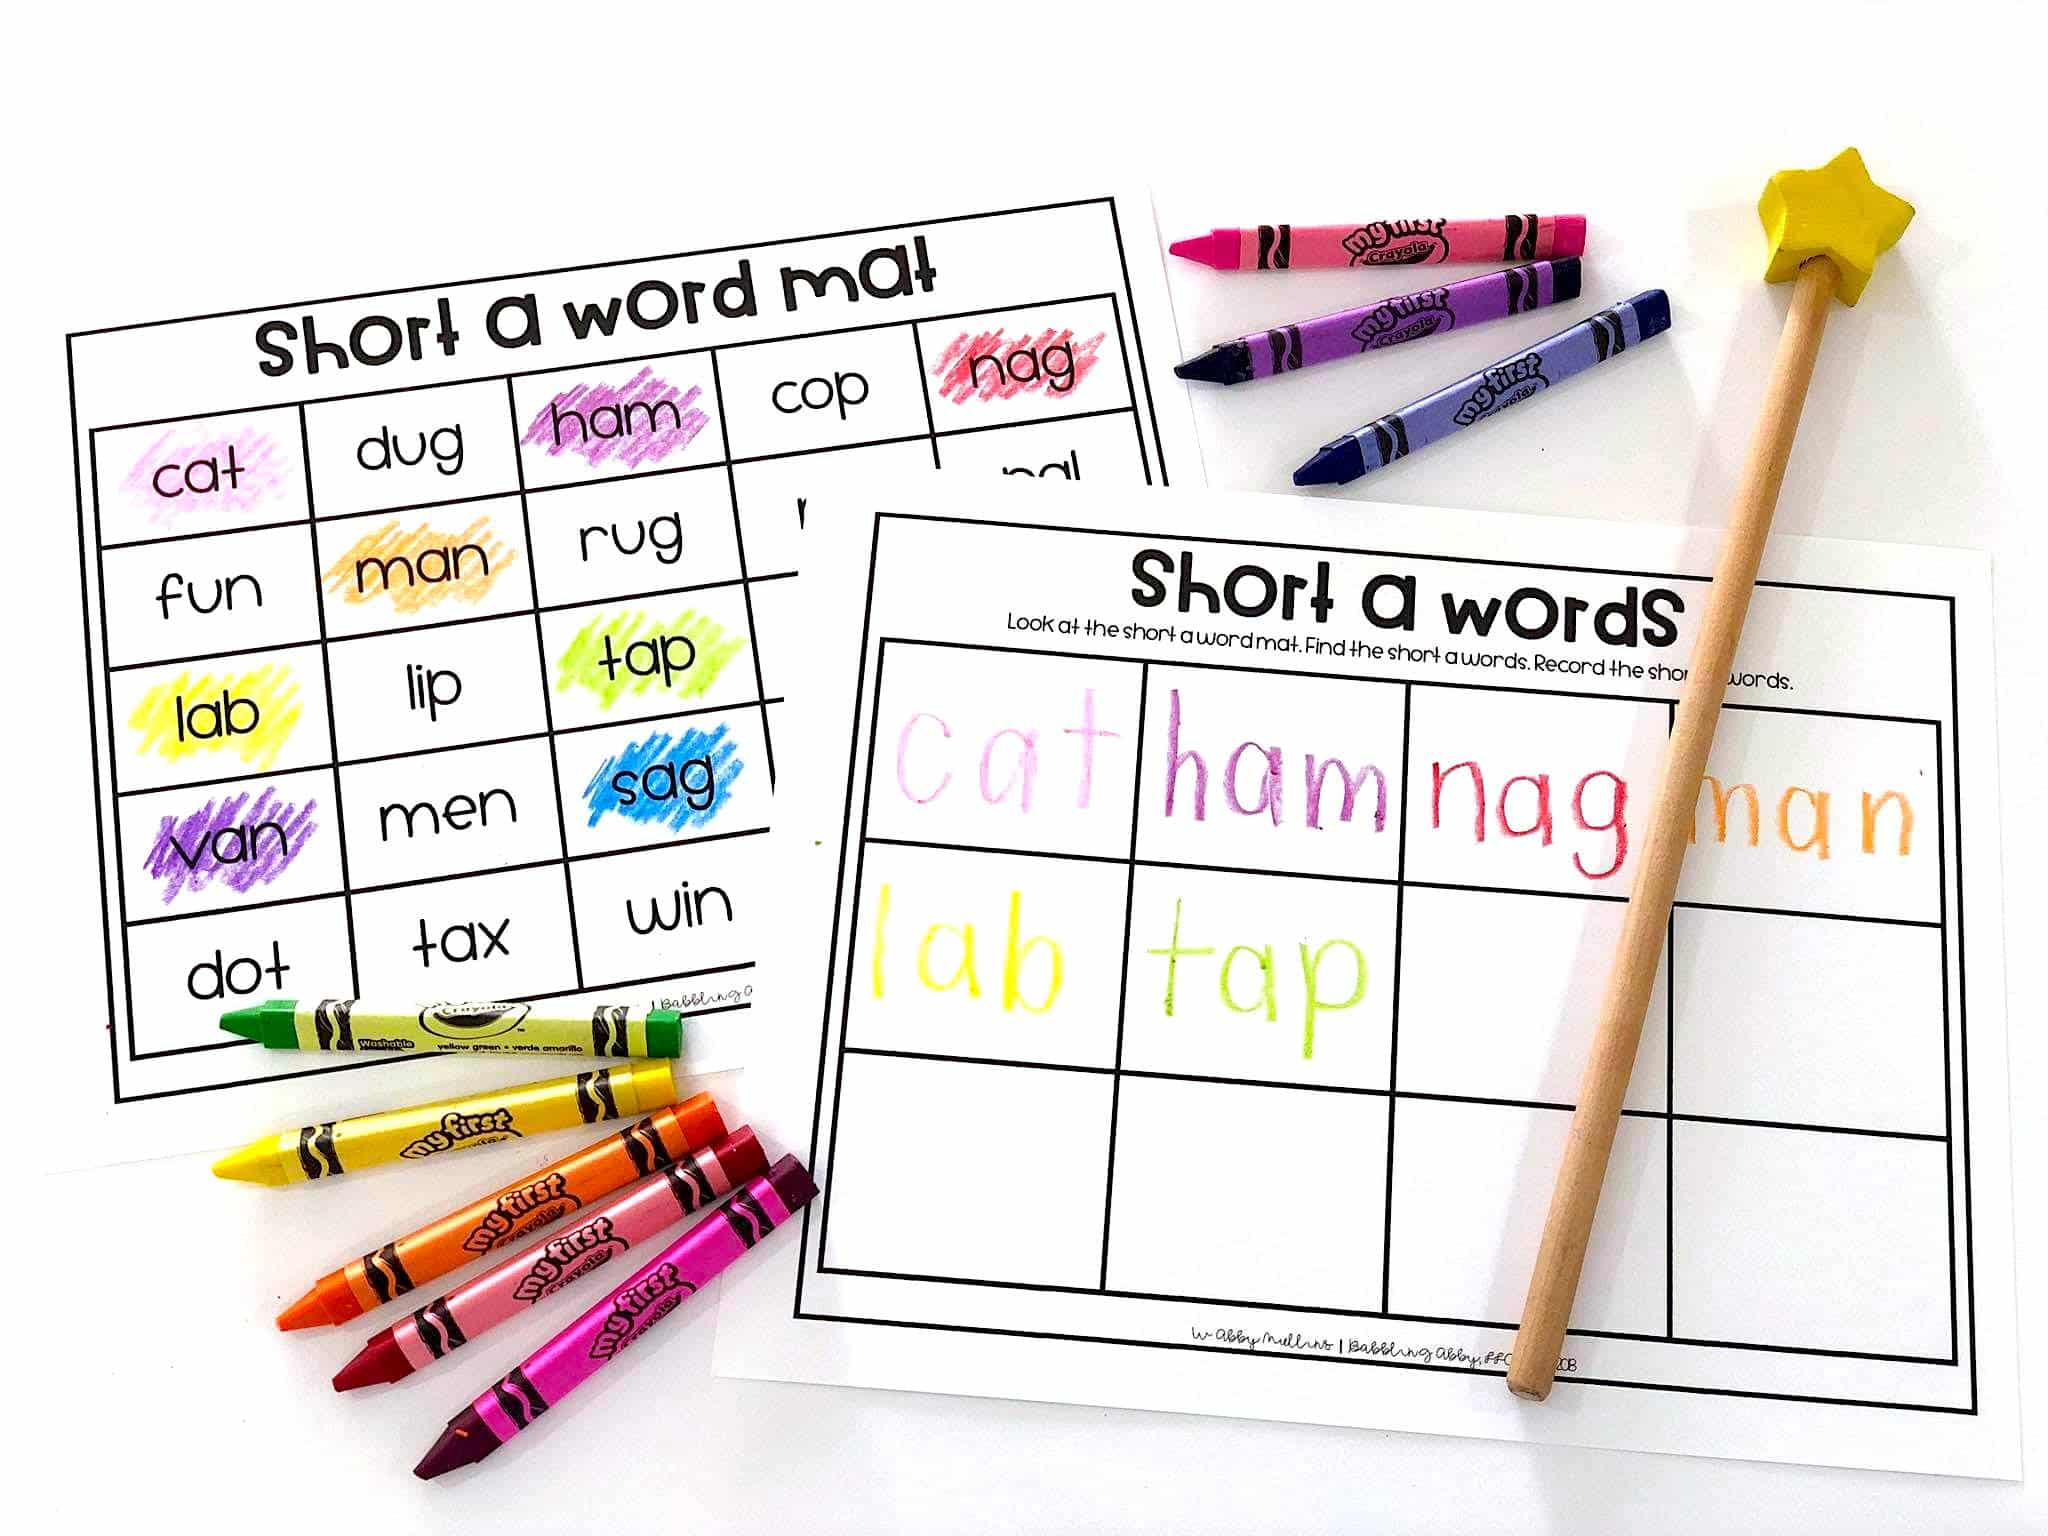 Short vowel phonics activities for kindergarten and first grade students.